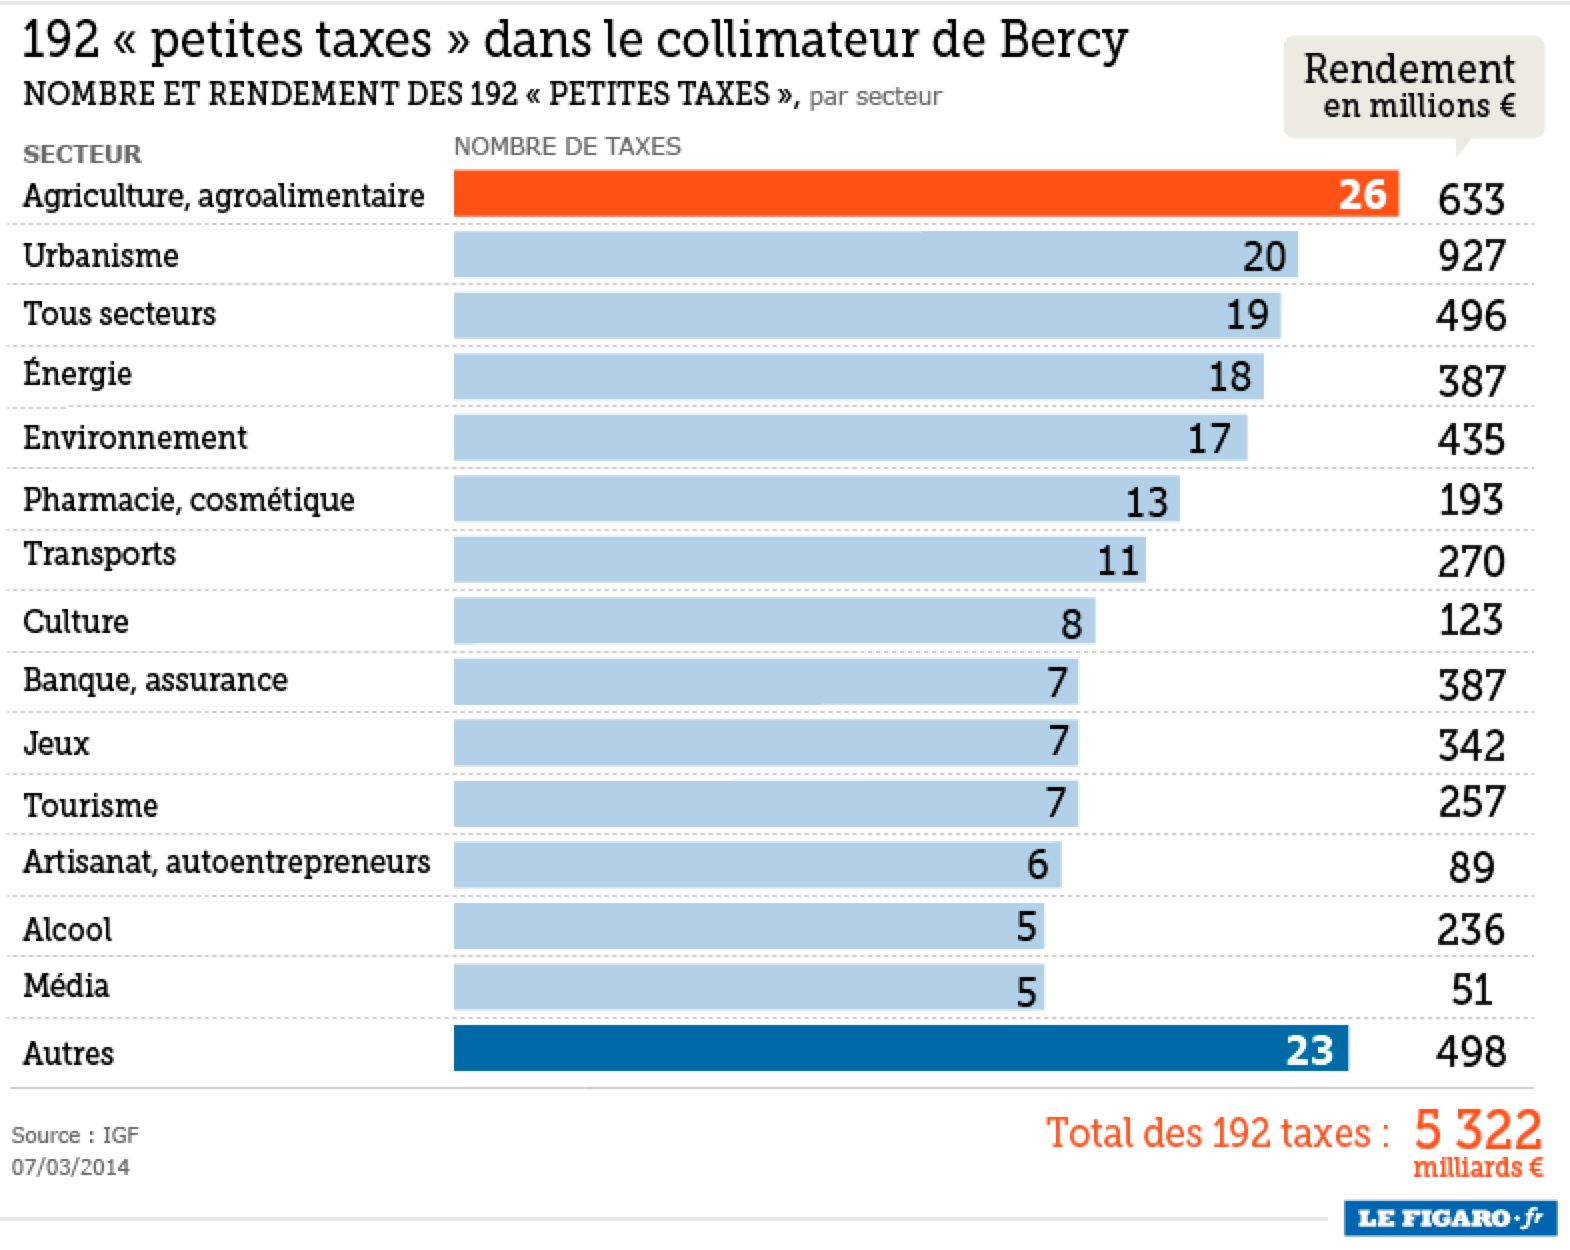 Simon Thorpe s Ideas On The Economy France Has 192 petites Taxes 